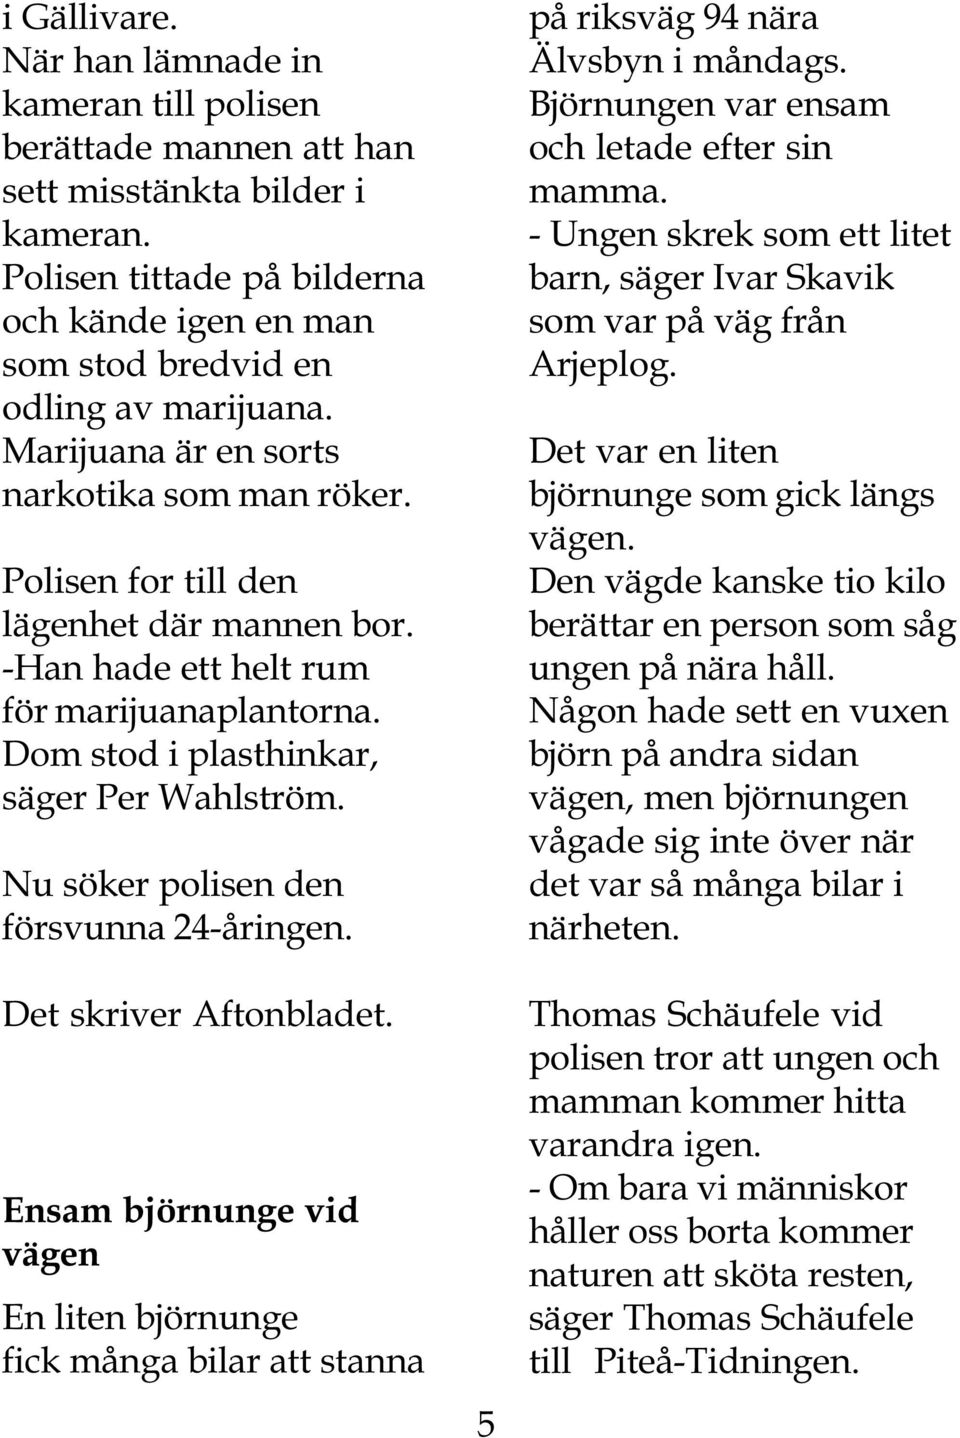 -Han hade ett helt rum för marijuanaplantorna. Dom stod i plasthinkar, säger Per Wahlström. Nu söker polisen den försvunna 24-åringen. Det skriver Aftonbladet.